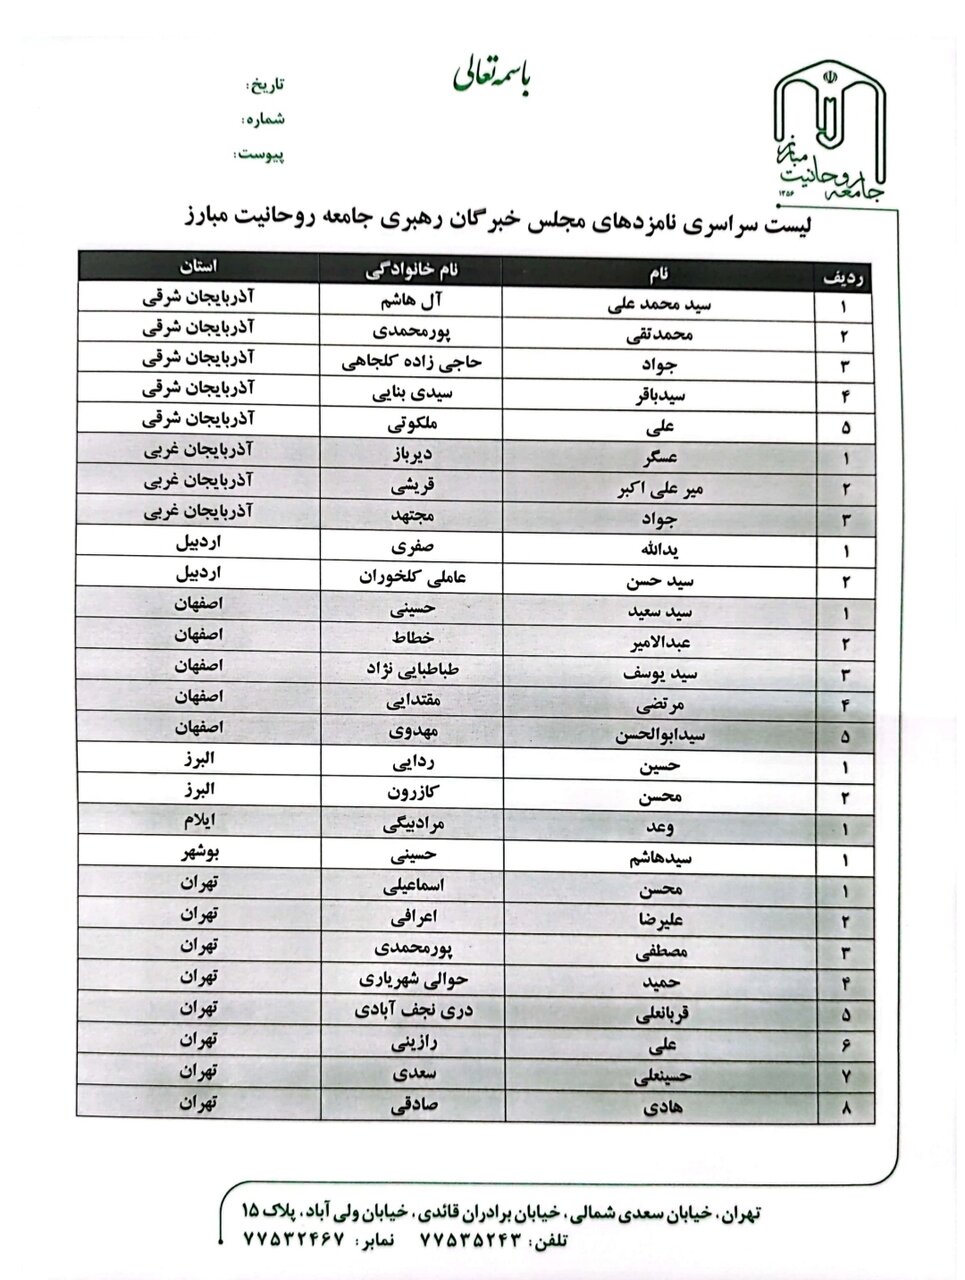 لیست نامزدهای جامعه روحانیت مبارز در انتخابات مجلس خبرگان اعلام شد + اسامی 2